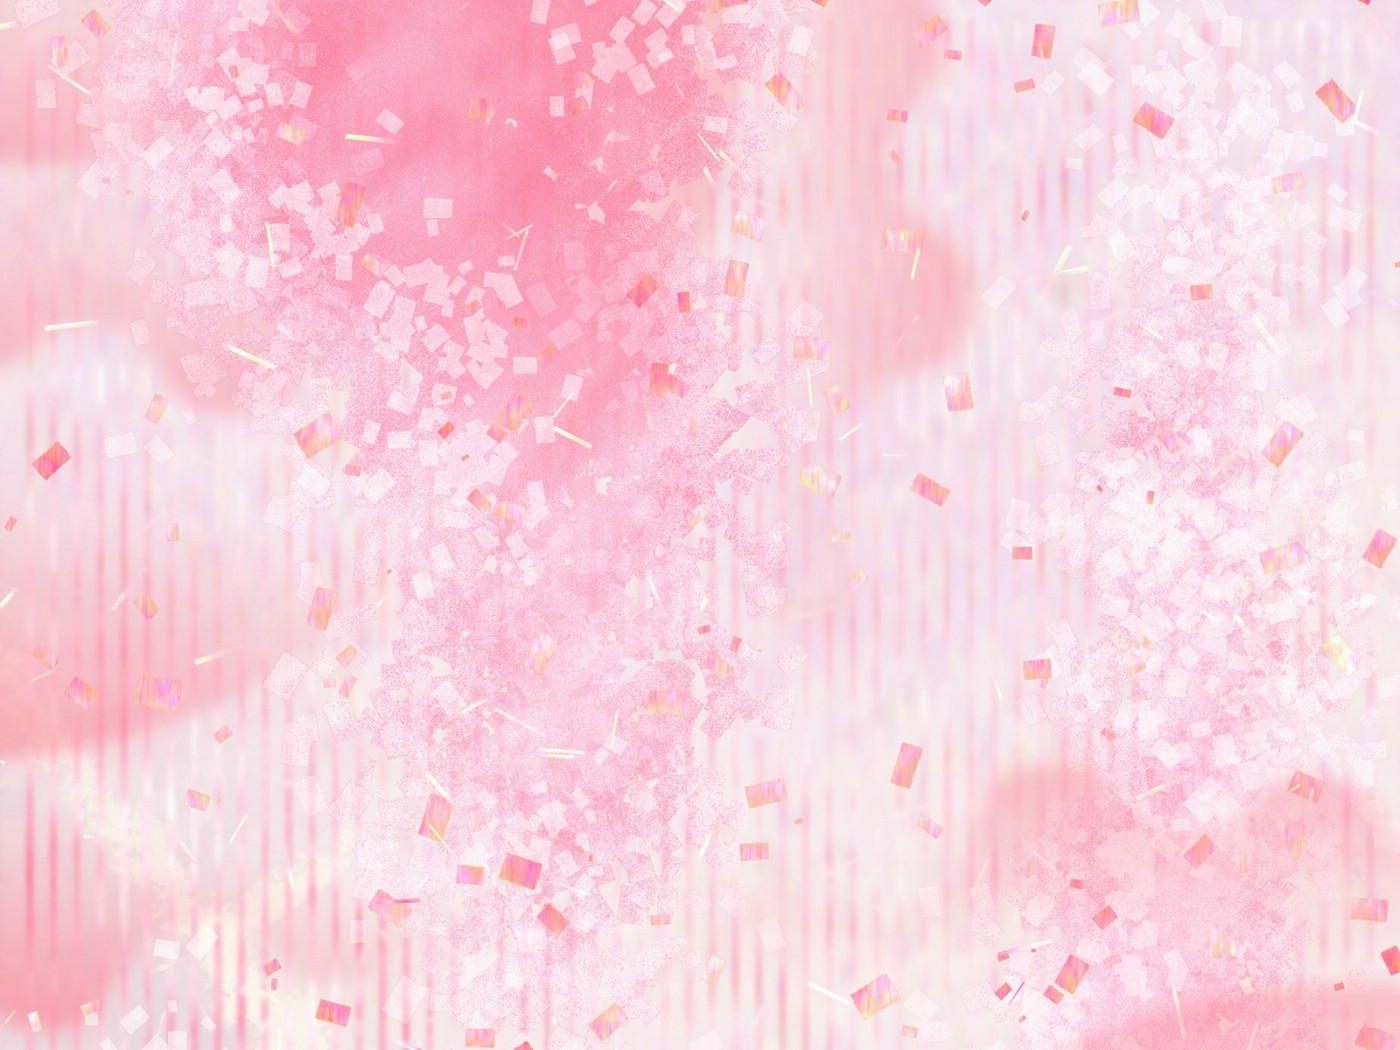 壁纸1400x1050 甜美系 碎花花卉图案设计壁纸 美丽碎花布 之 粉红甜美系壁纸 美丽碎花布 之 粉红甜美系图片 美丽碎花布 之 粉红甜美系素材 花卉壁纸 花卉图库 花卉图片素材桌面壁纸